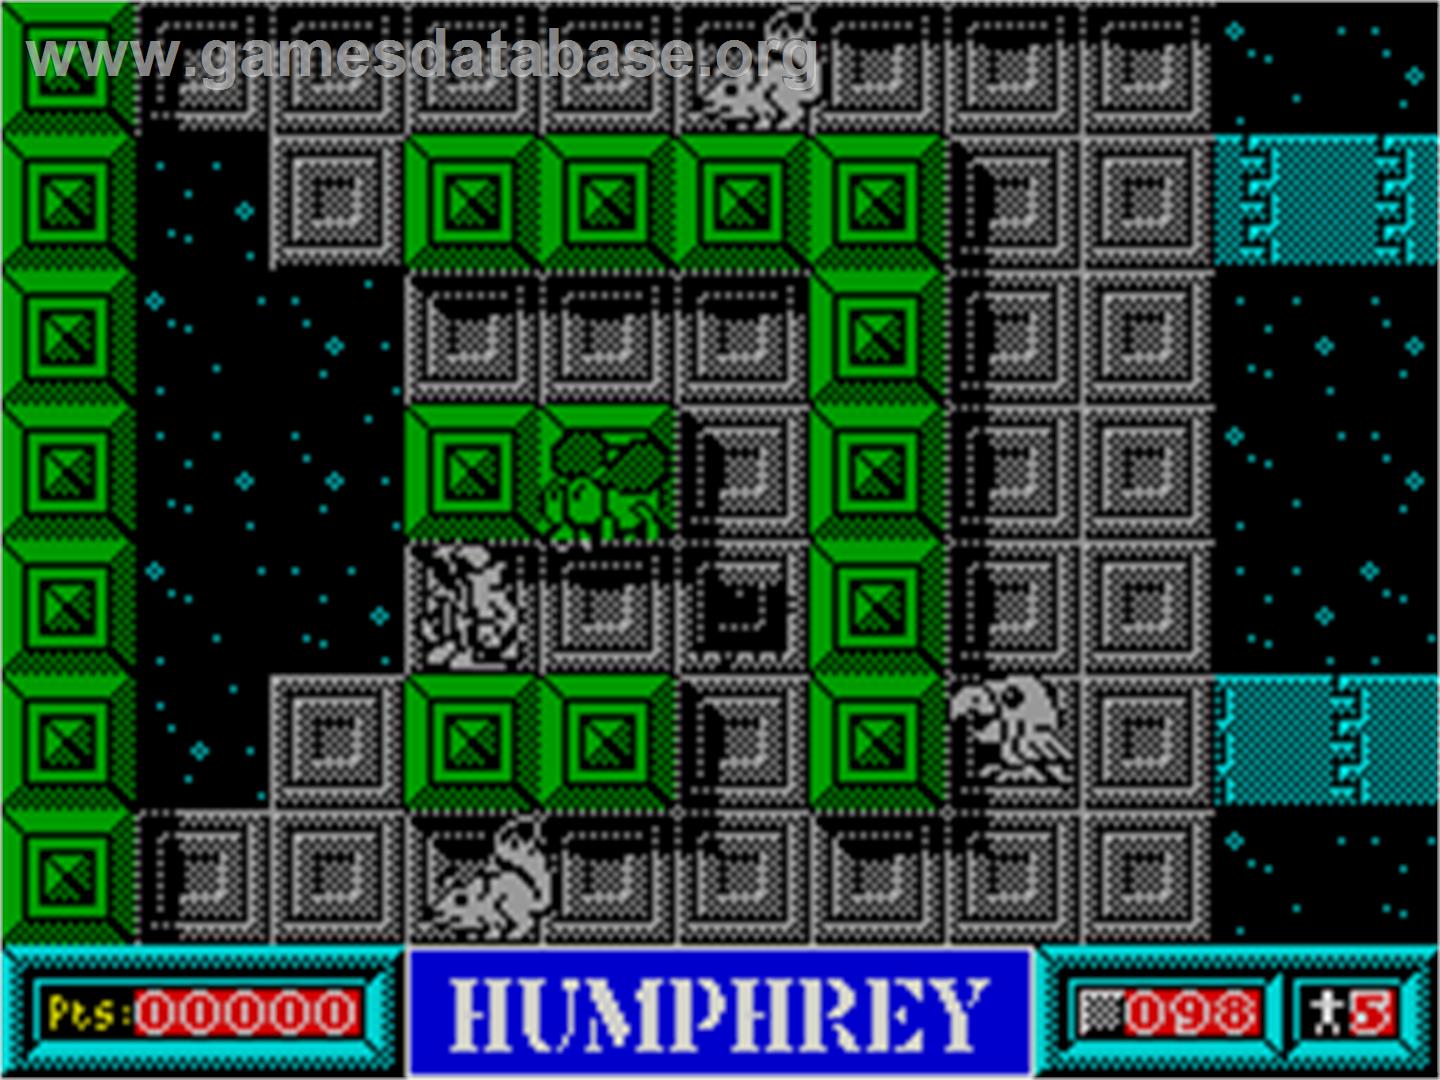 Humphrey - Sinclair ZX Spectrum - Artwork - In Game